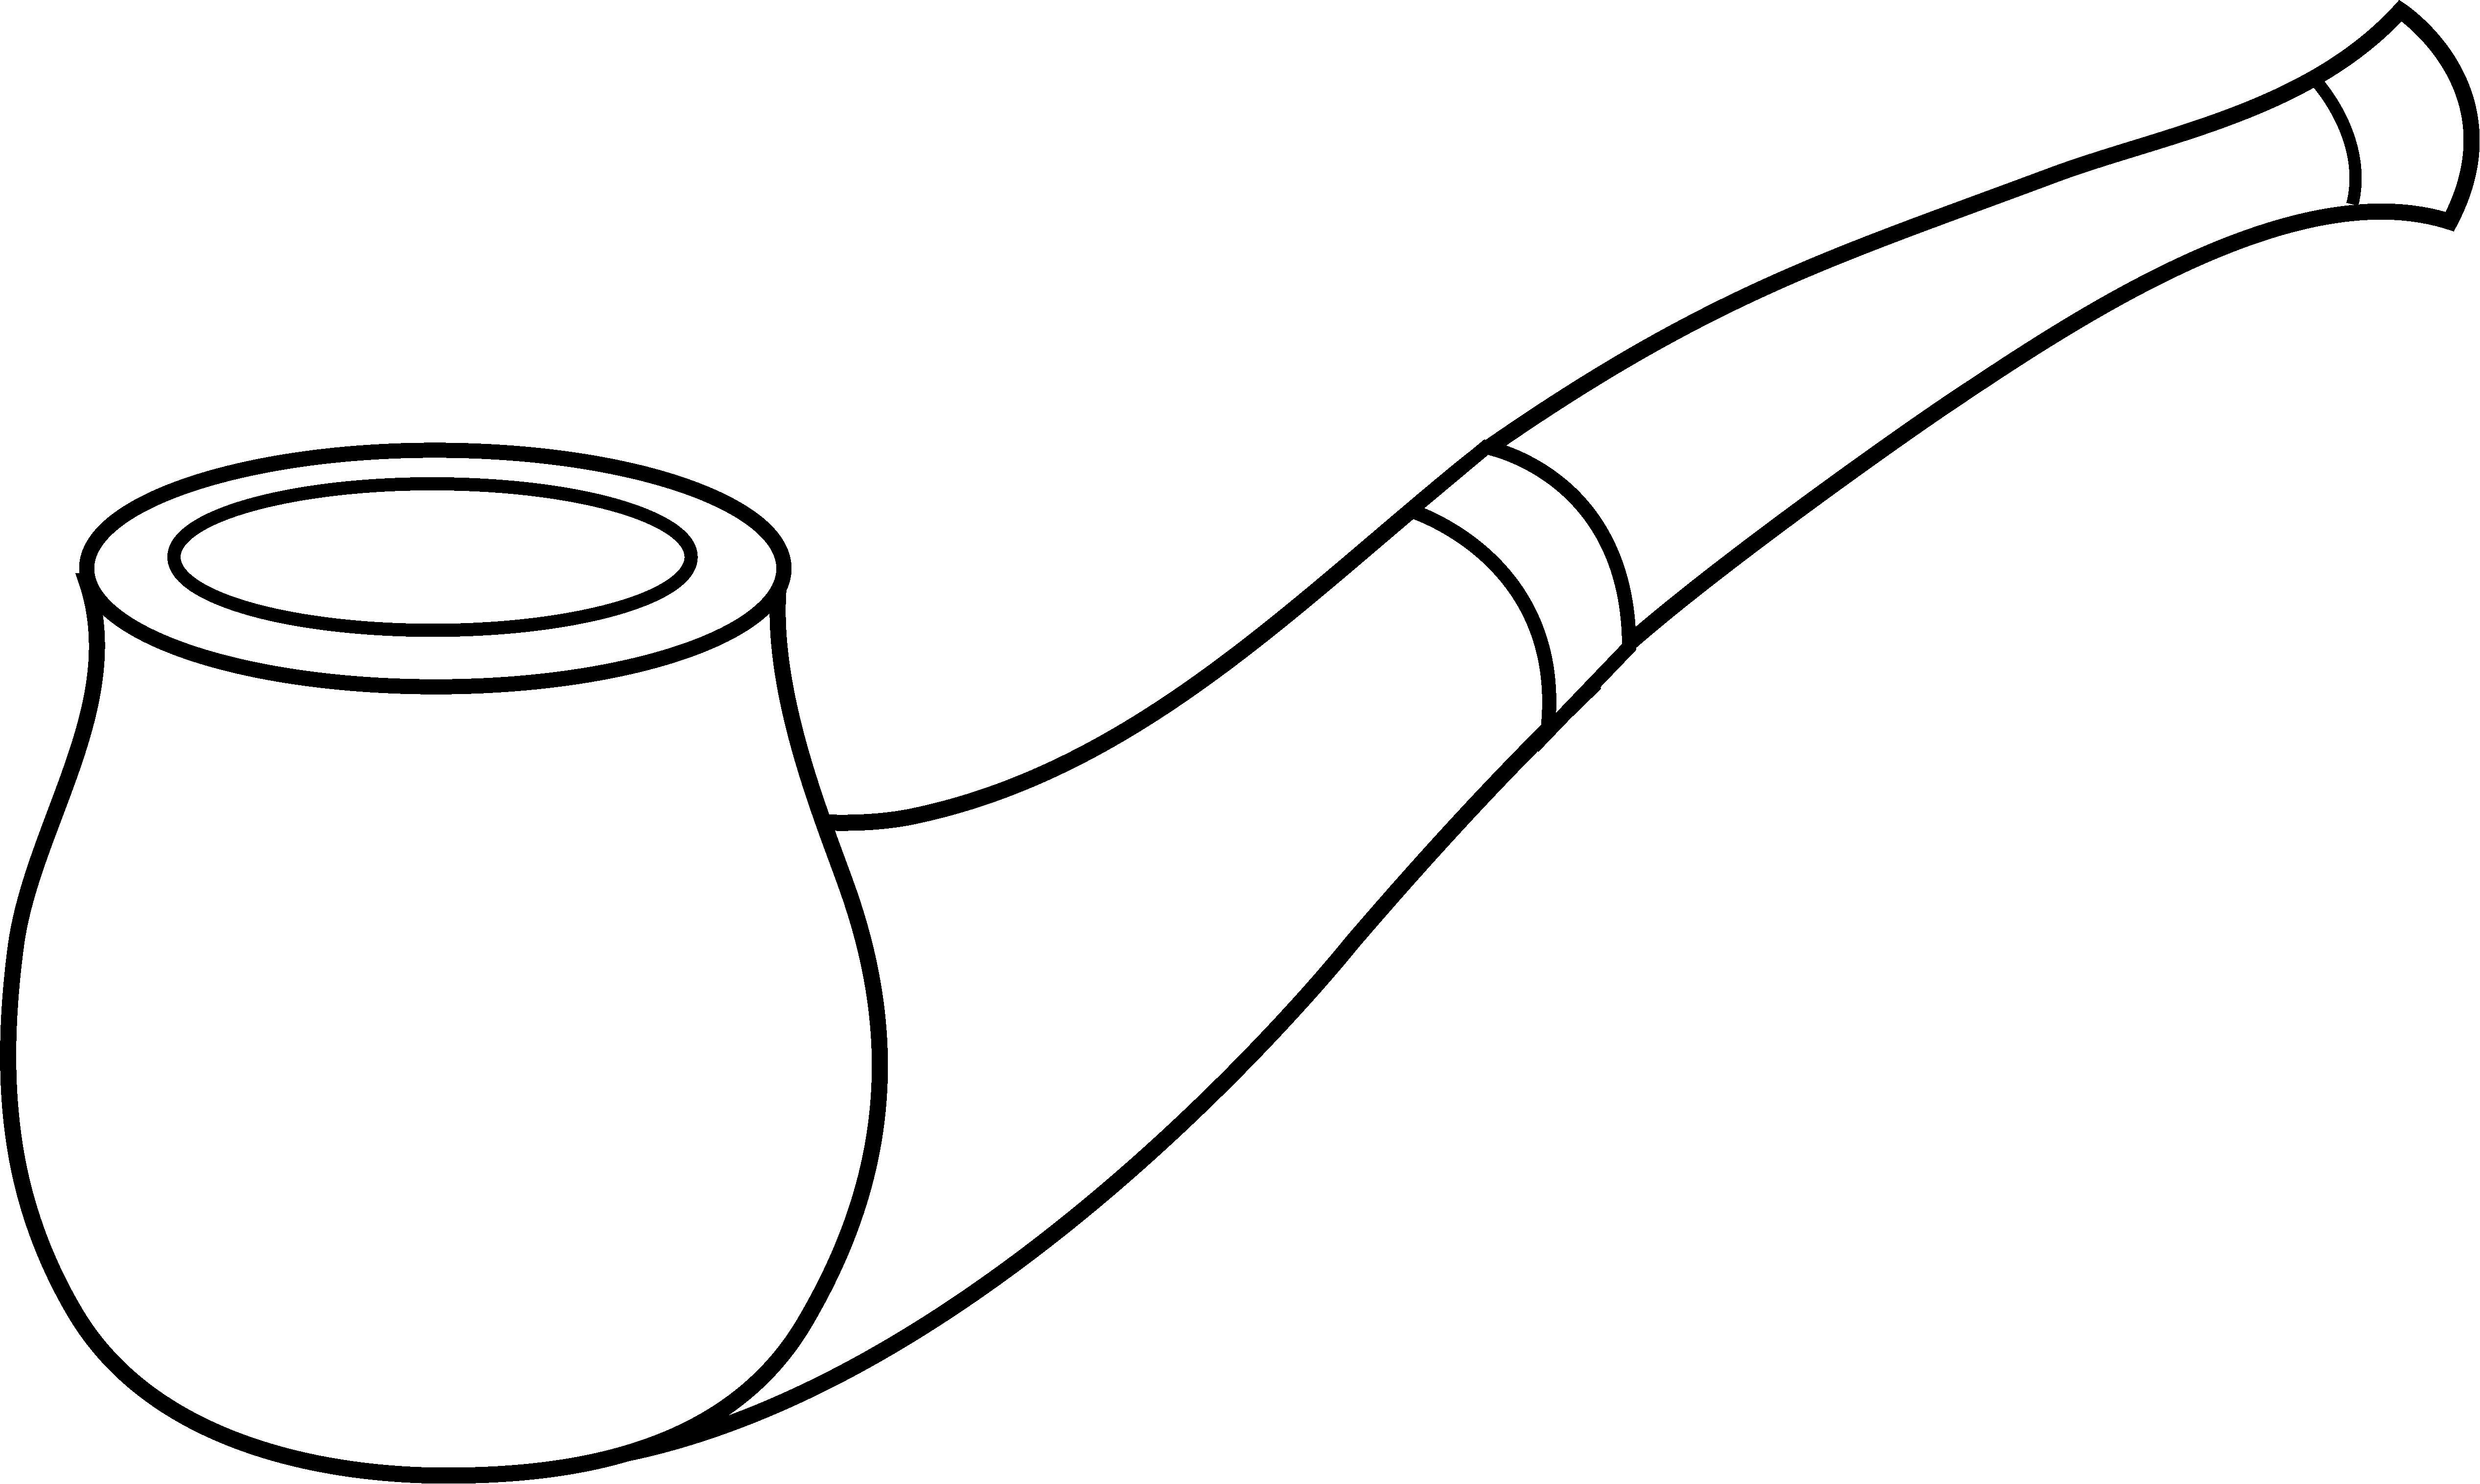 Tobacco pipe Stock Illustrati